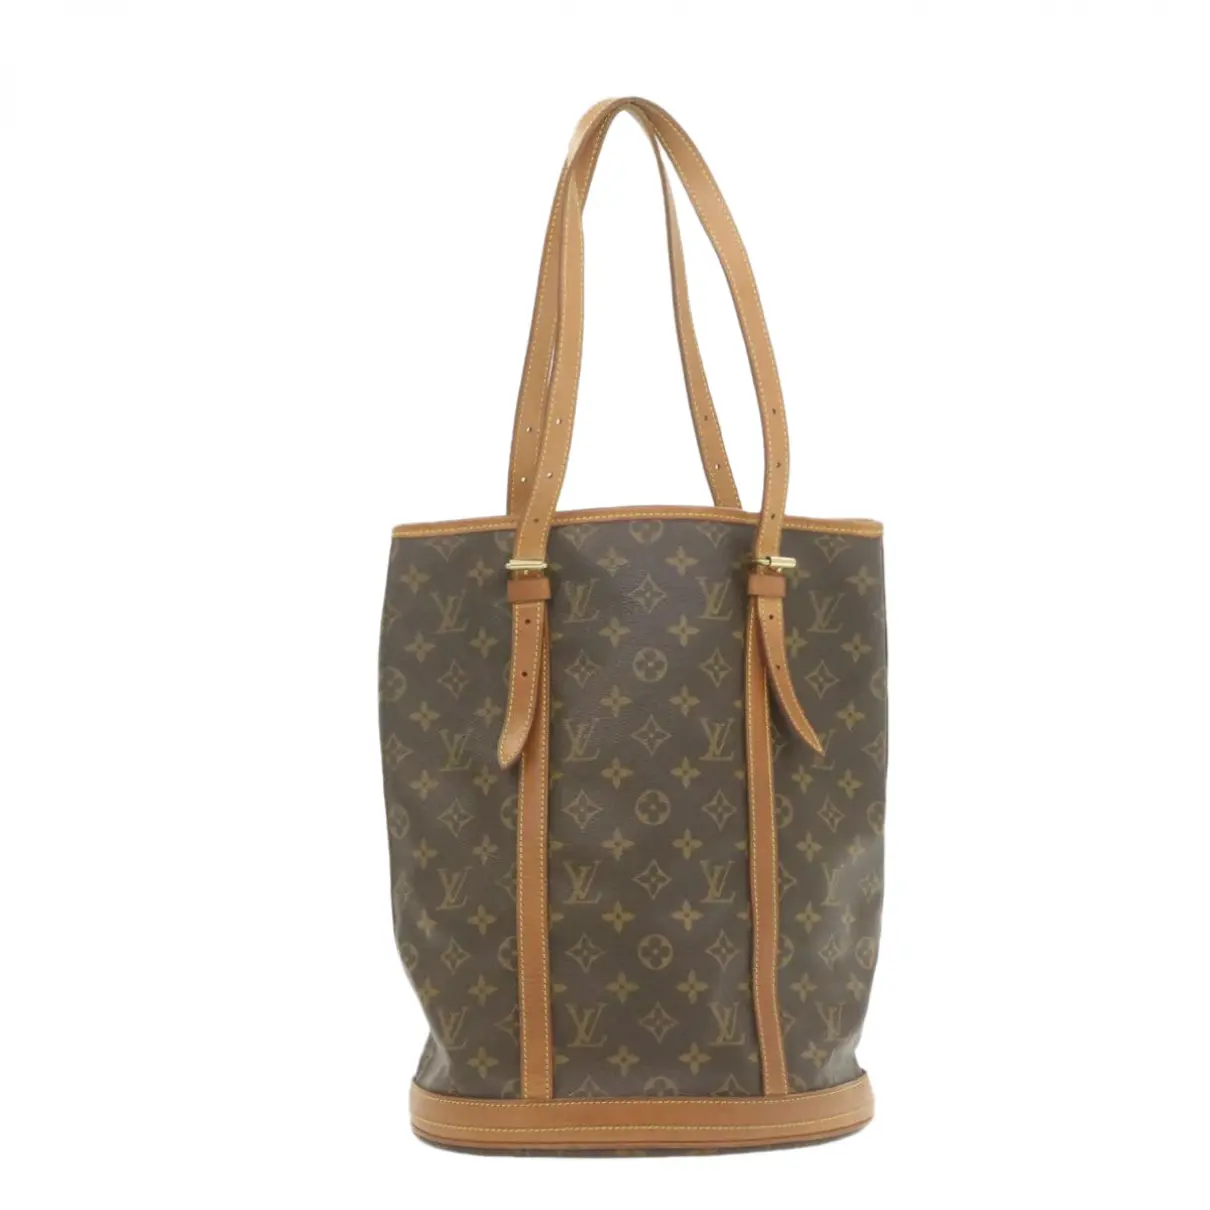 Buy Louis Vuitton Cloth clutch bag online